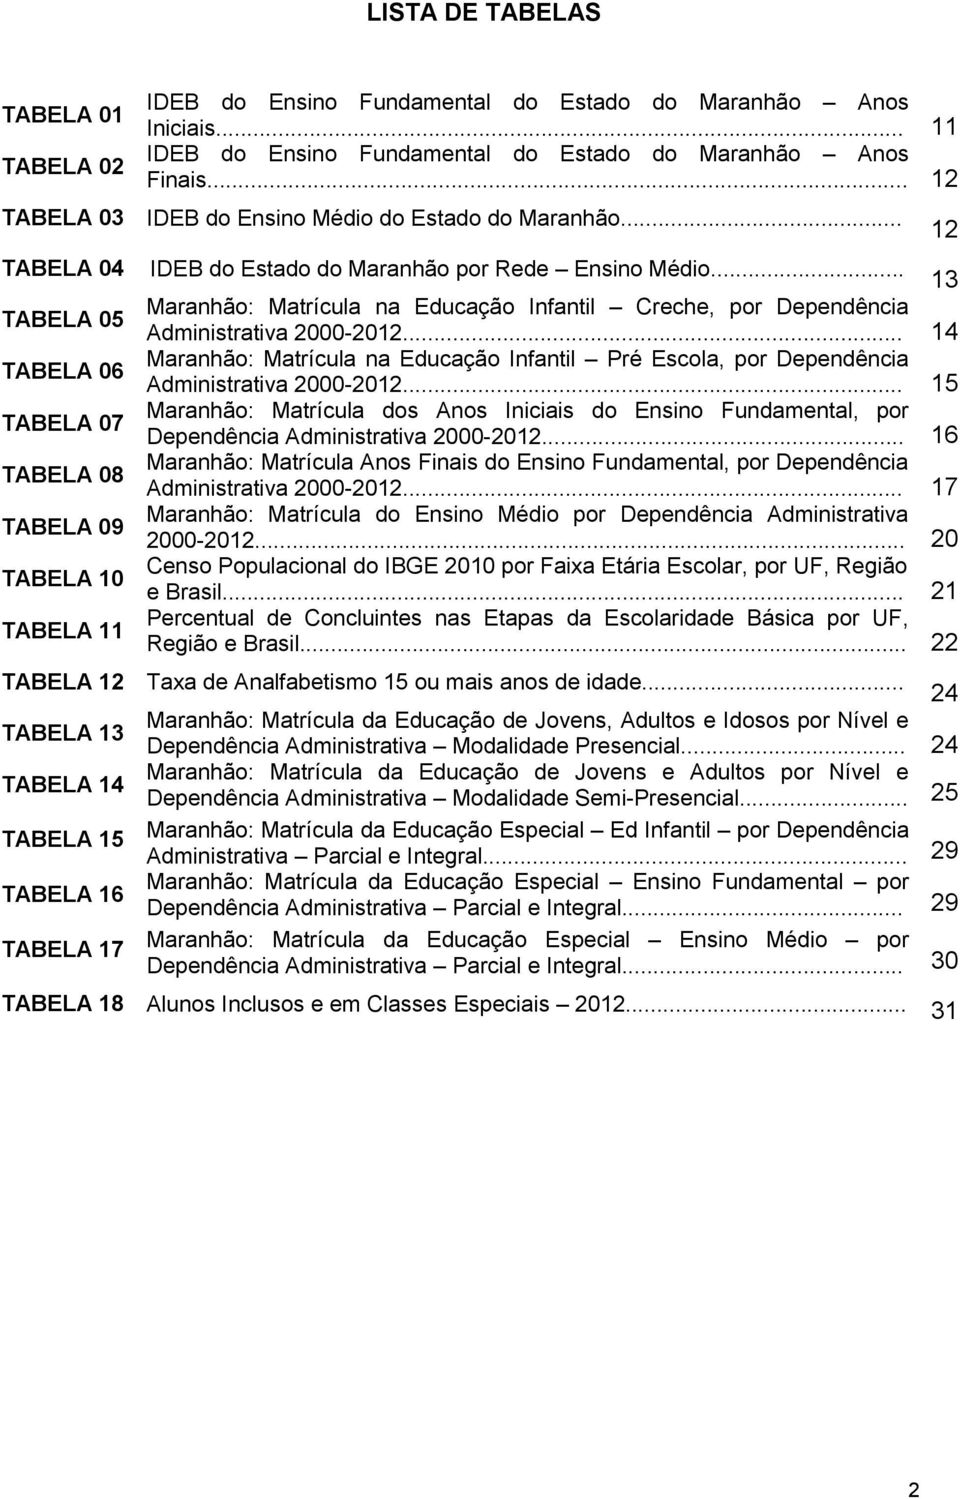 .. 13 Maranhão: Matrícula na Educação Infantil Creche, por Dependência Administrativa 2000-2012... 14 Maranhão: Matrícula na Educação Infantil Pré Escola, por Dependência Administrativa 2000-2012.